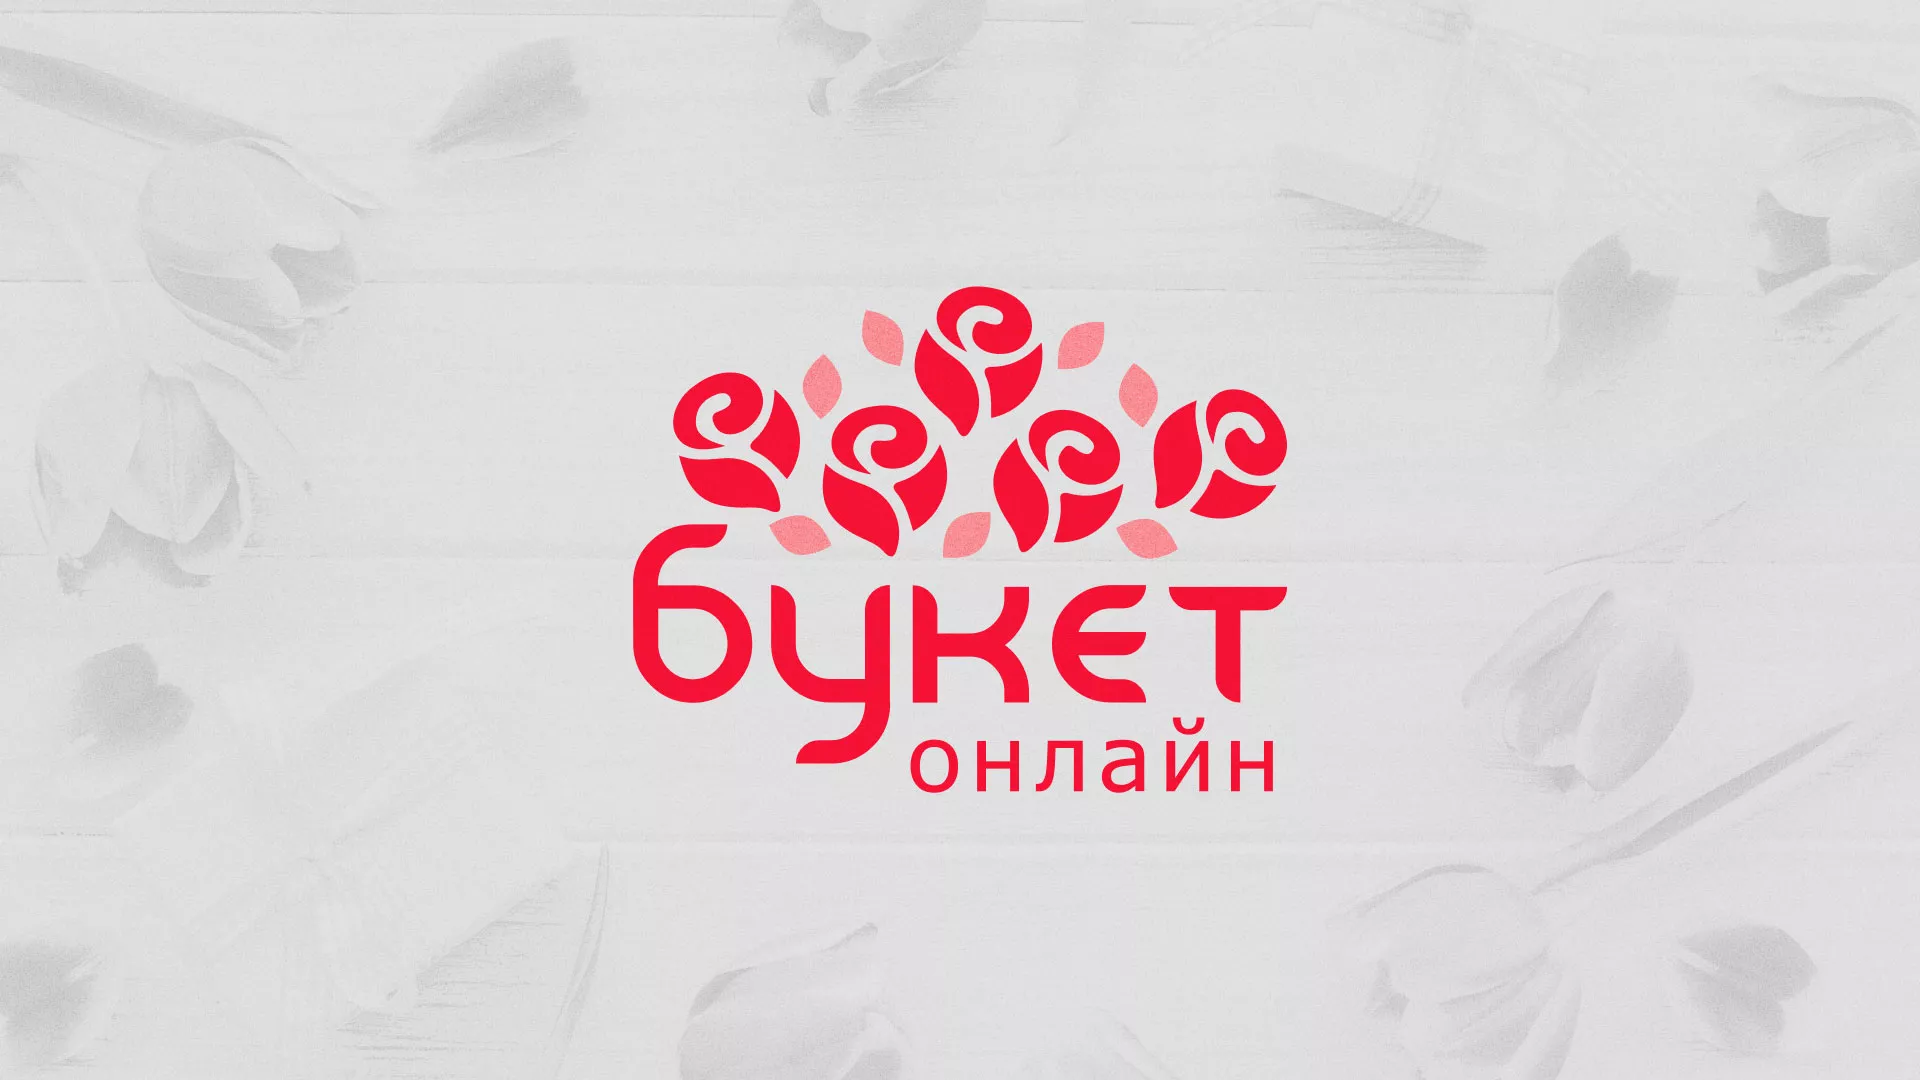 Создание интернет-магазина «Букет-онлайн» по цветам в Грязовце